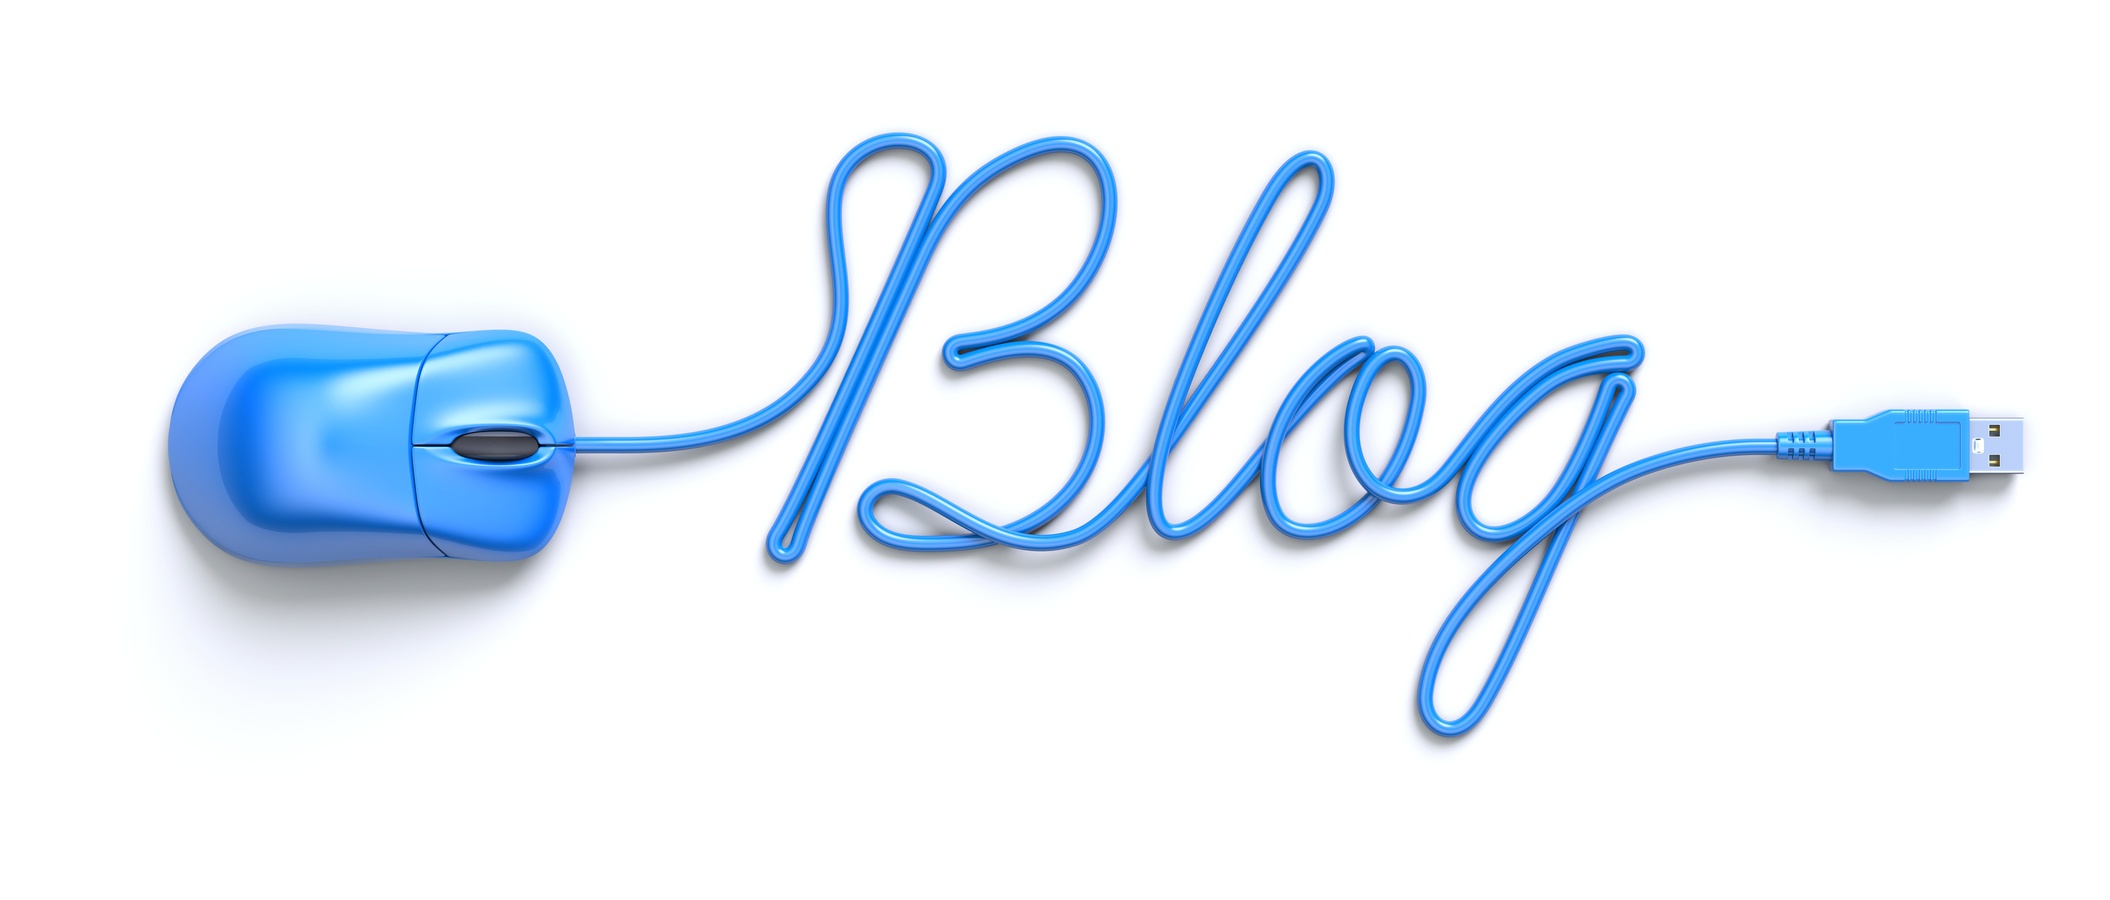 Blog là kênh triển khai Content Marketing hiệu quả